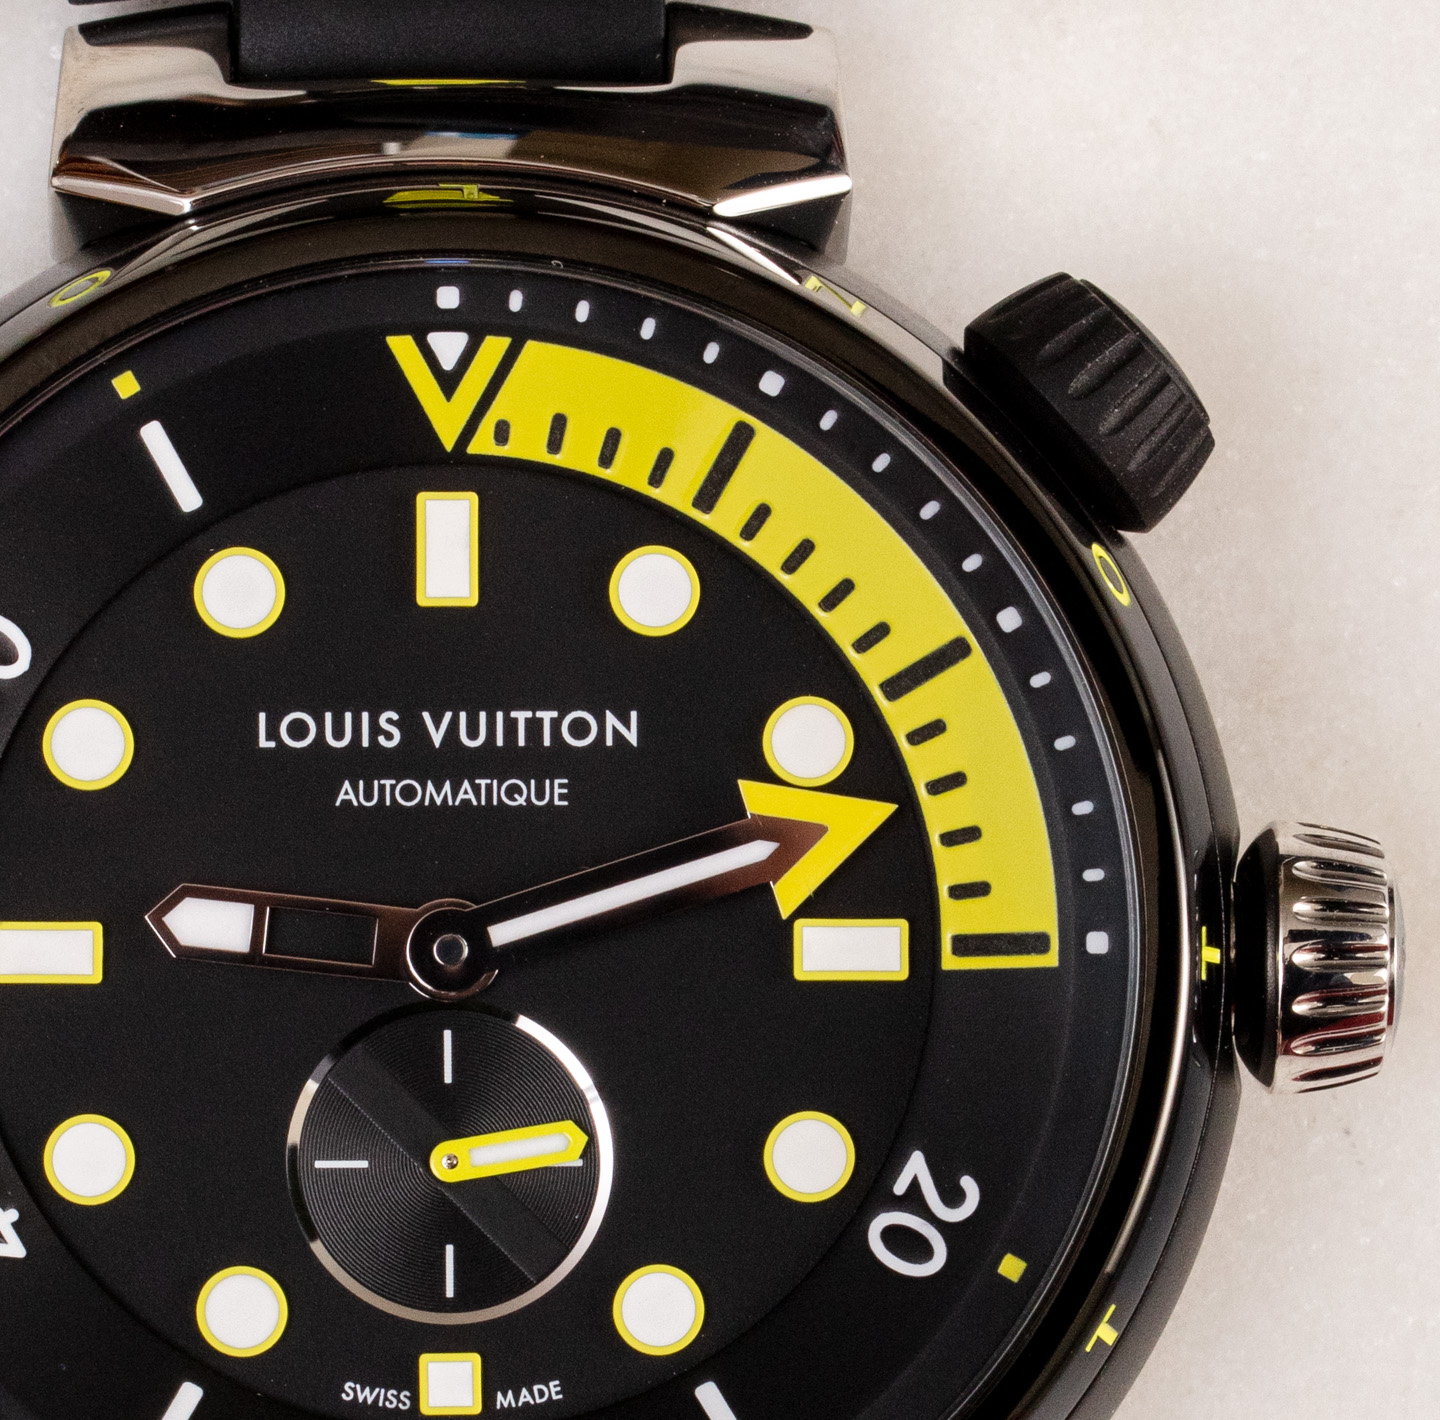 W&W 2021: Louis Vuitton Tambour Street Diver. Four Colorful Models